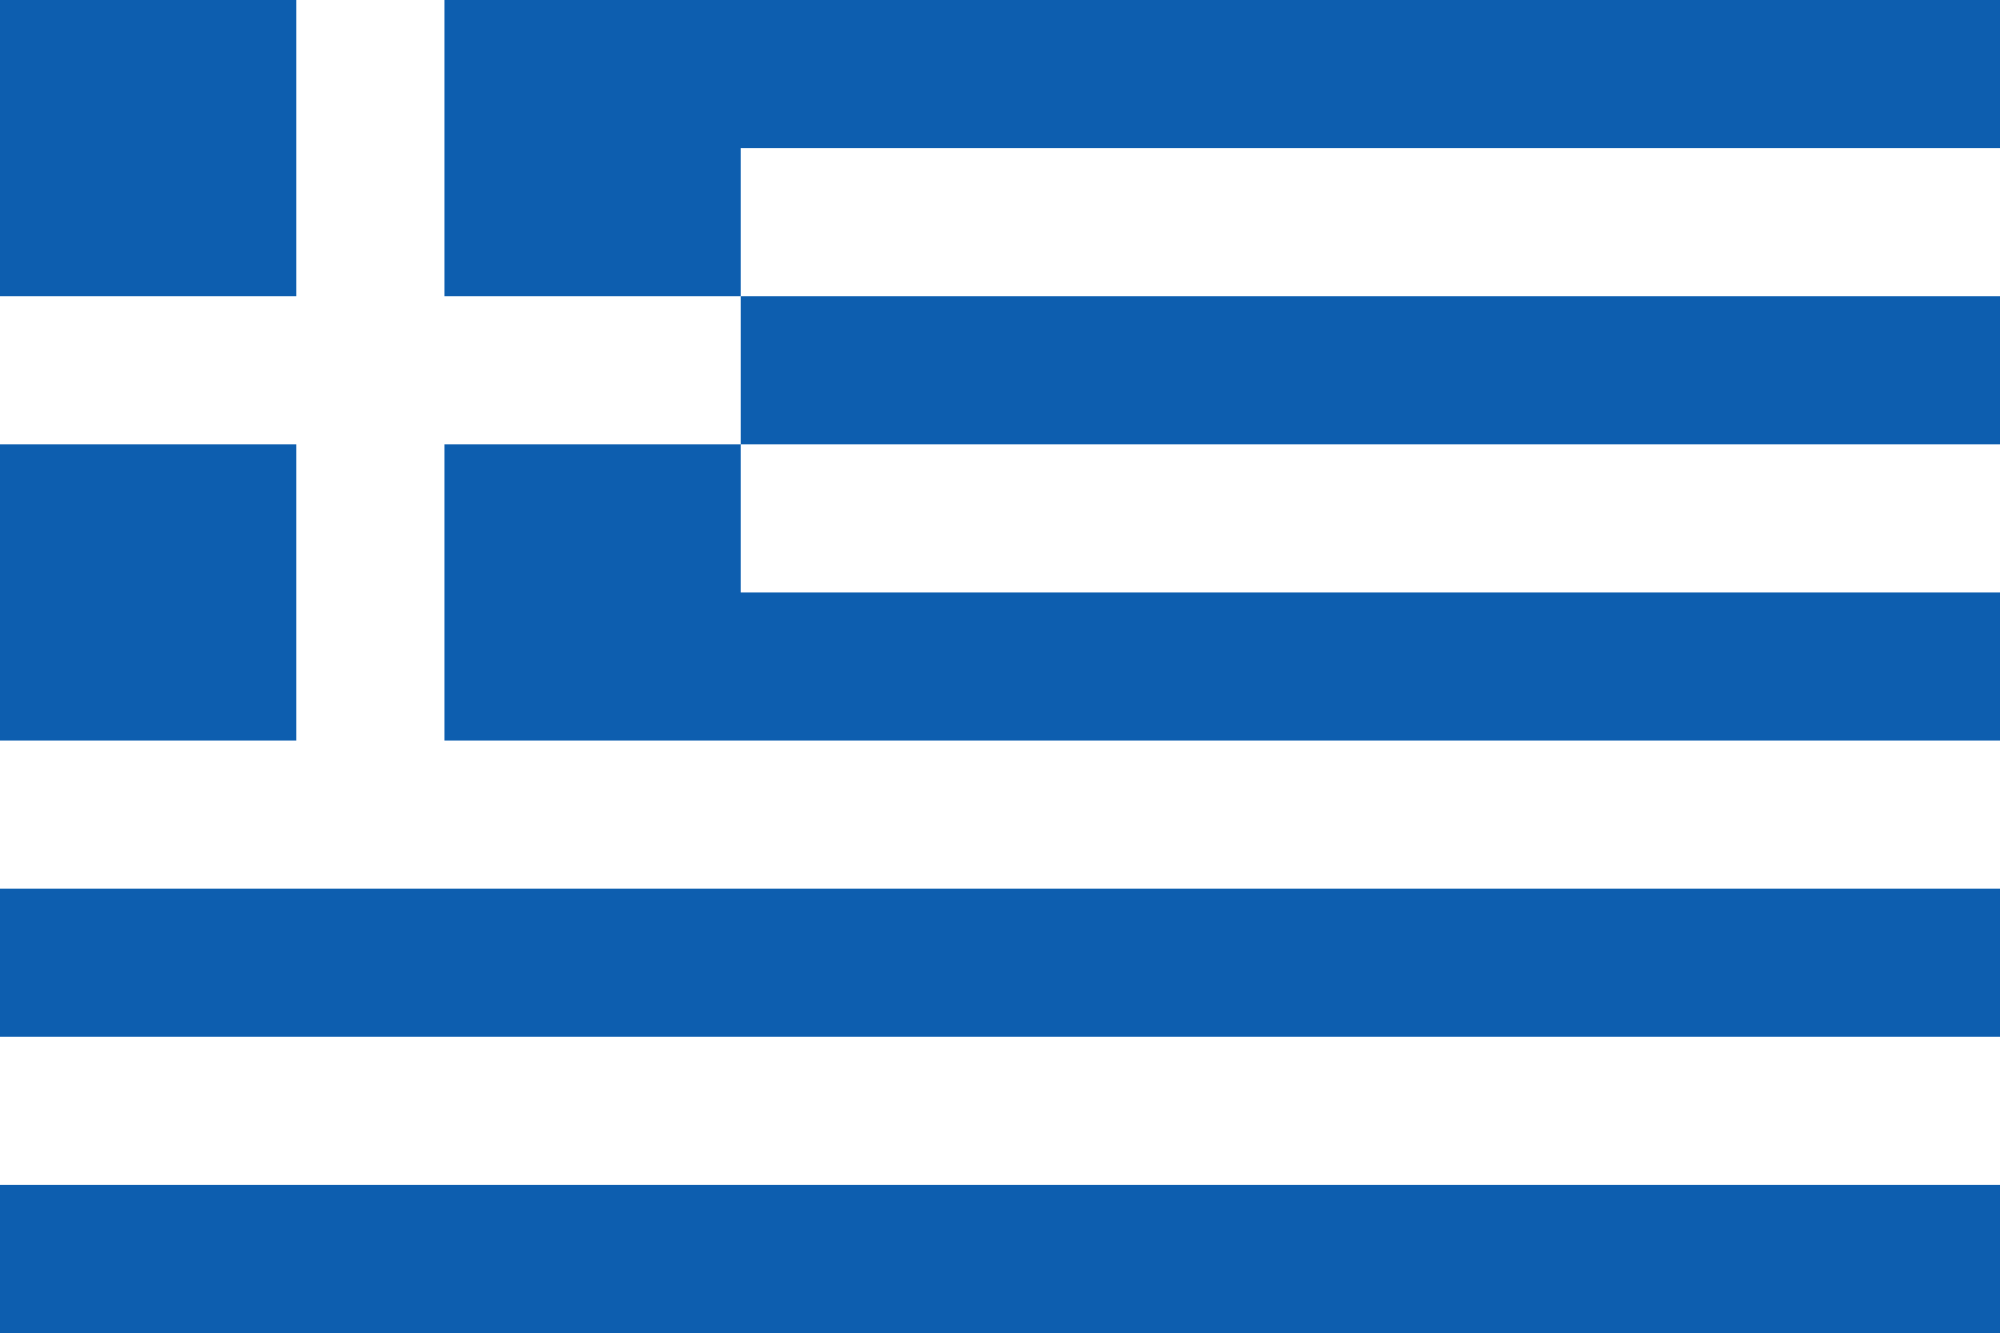 White G Inside Blue Square Logo - Flag of Greece